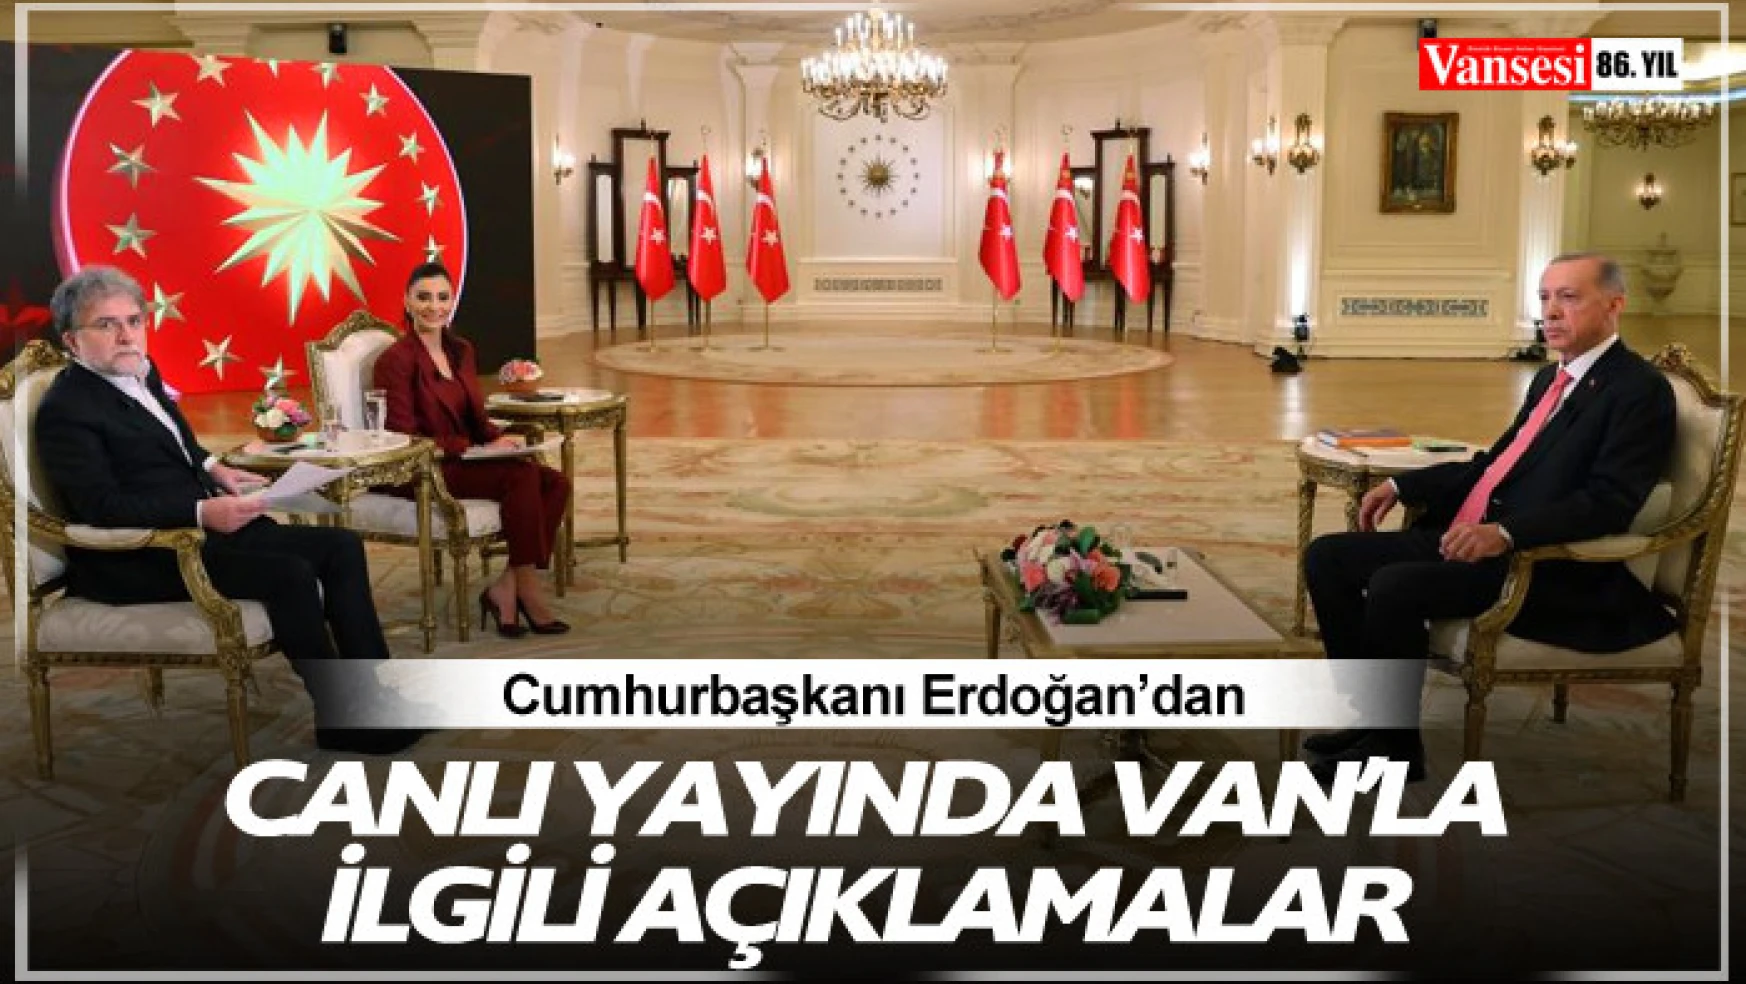 Cumhurbaşkanı Erdoğan'dan Van'la ilgili açıklamalar